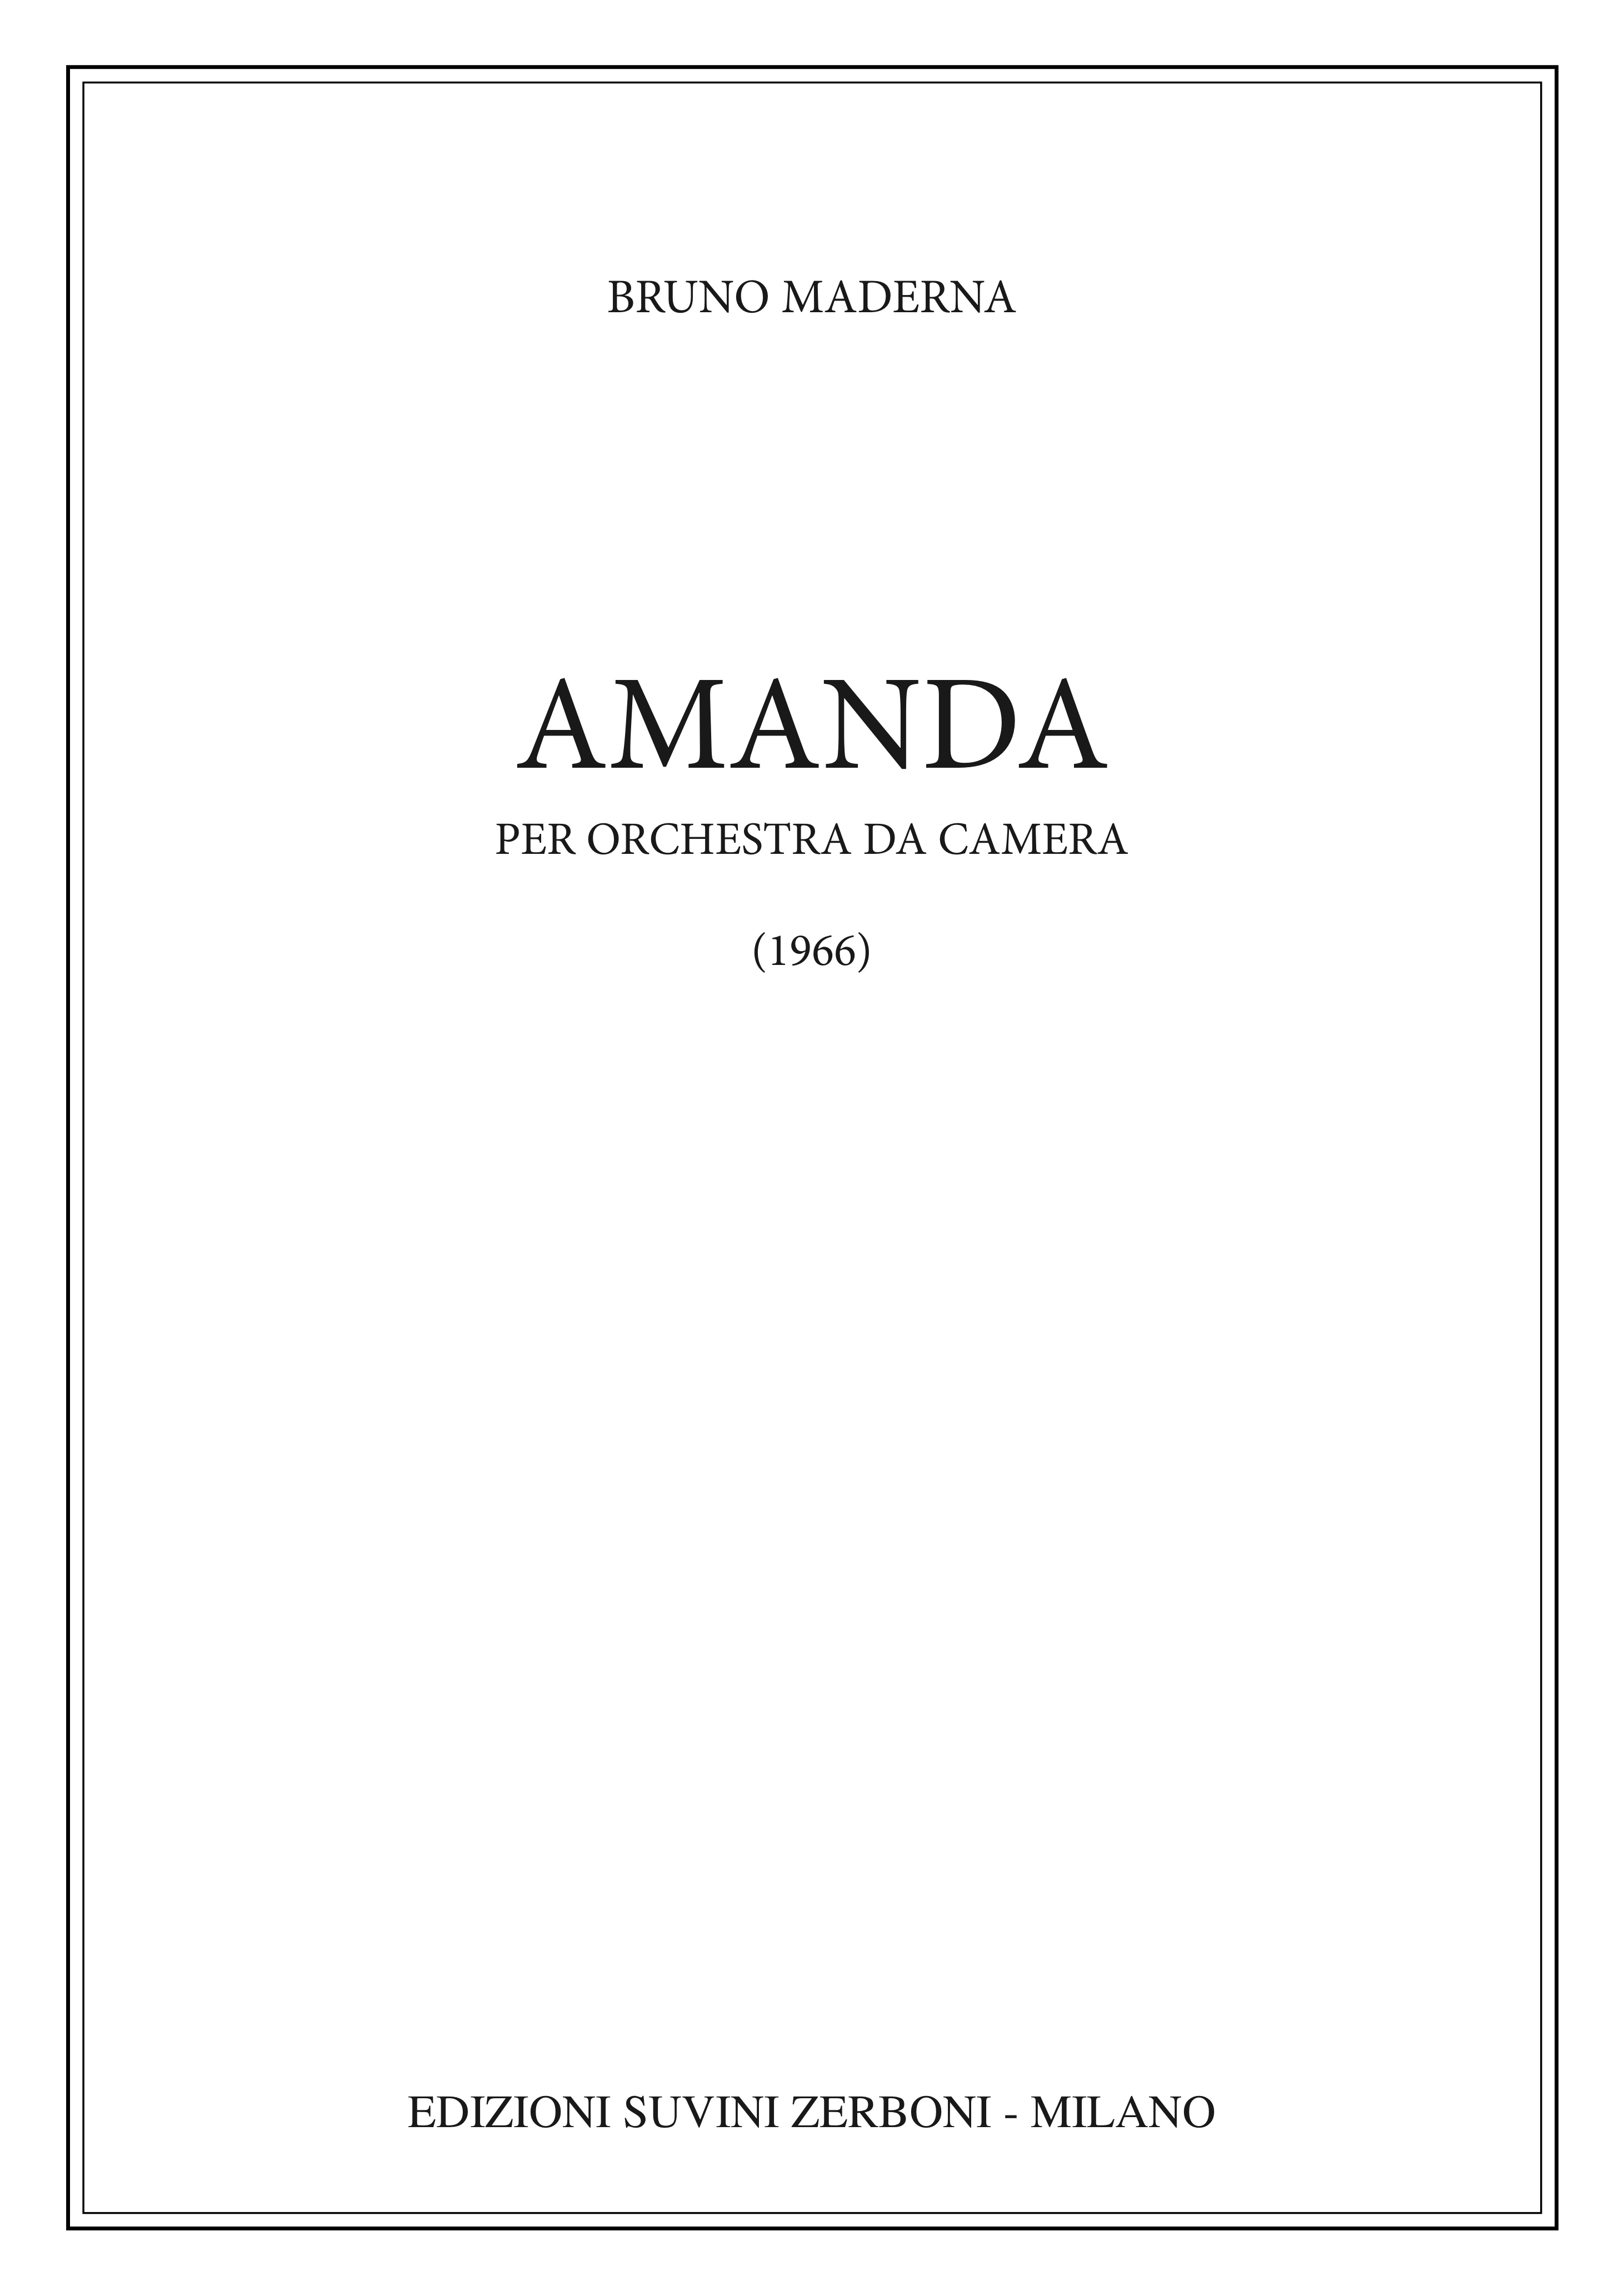 Amanda_Maderna 1